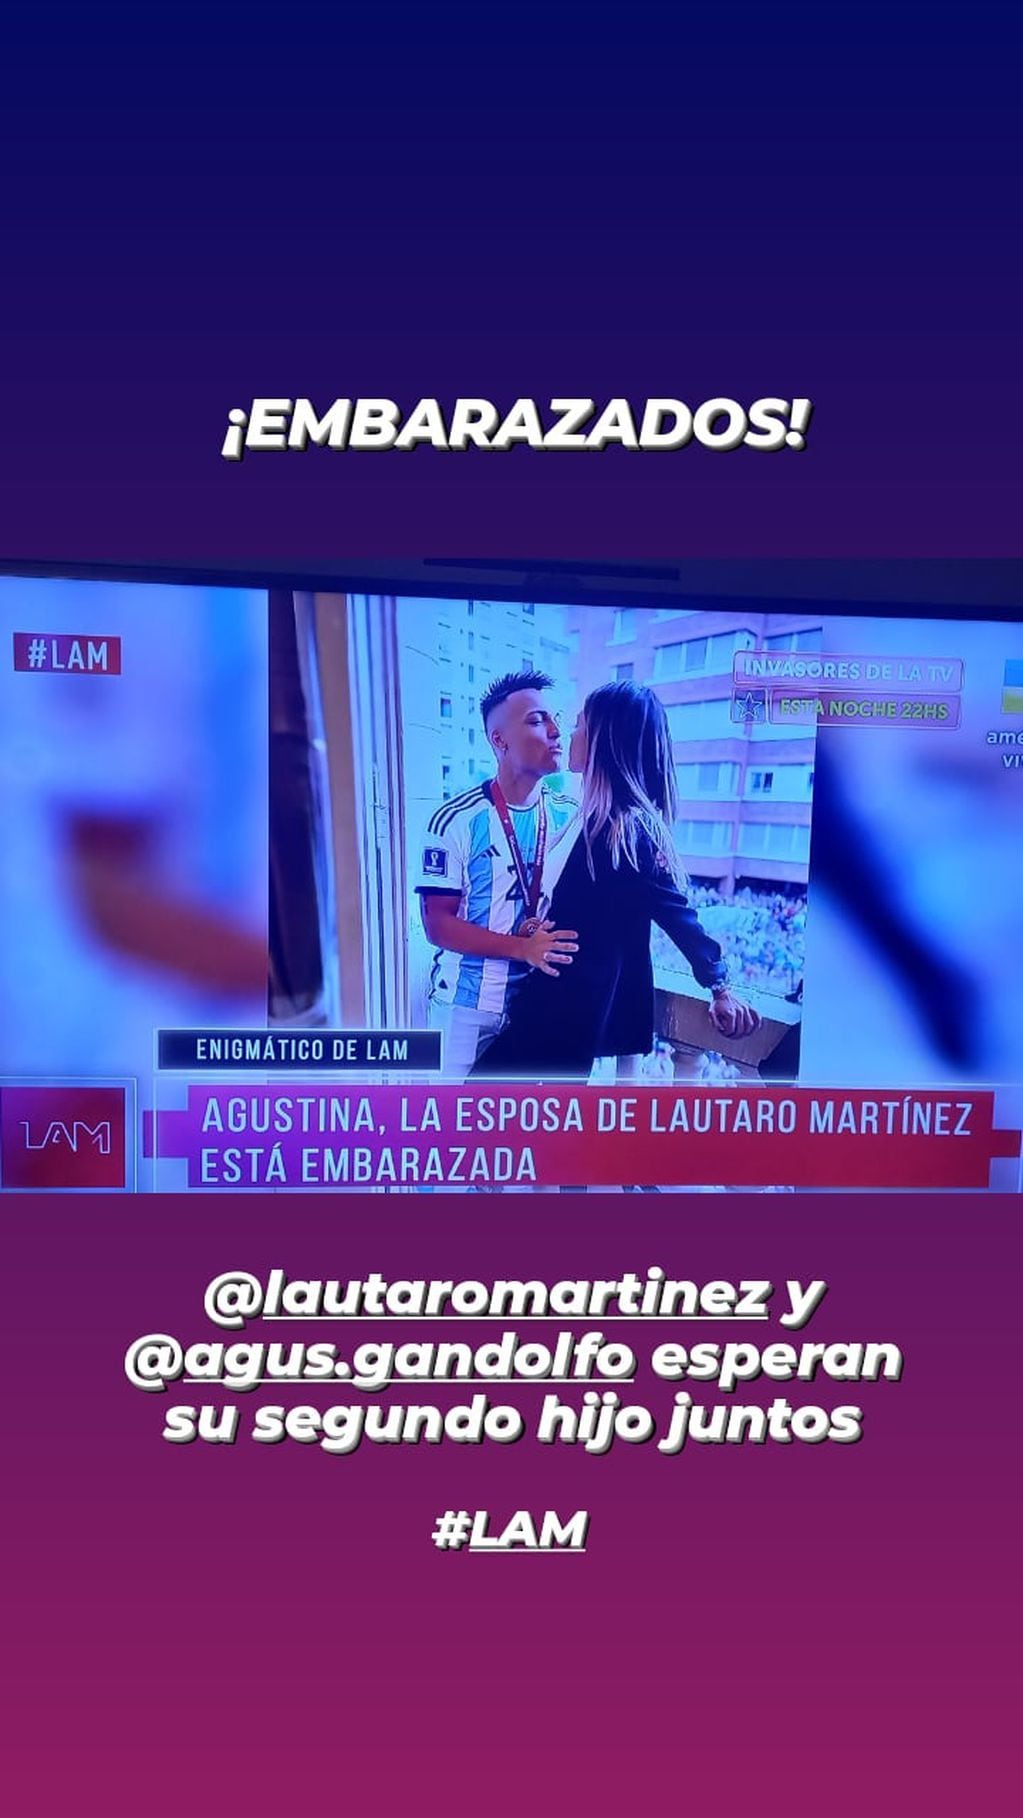 Lautaro Martínez y Agus Gandolfo esperan su segundo hijo.